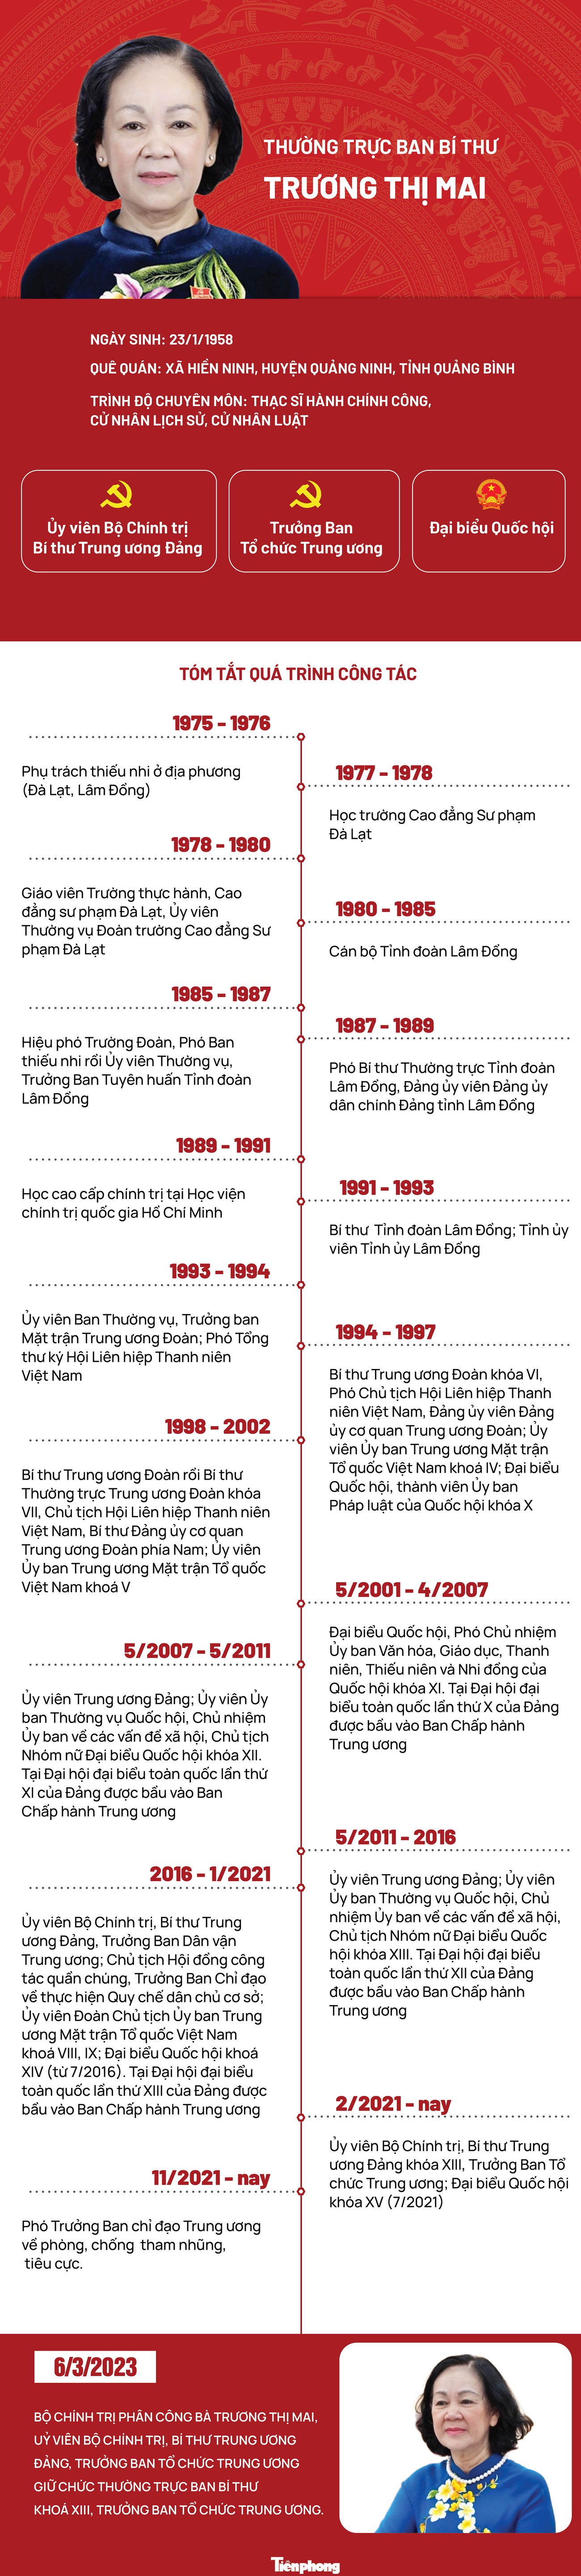 [Infographic] Chân dung Thường trực Ban Bí thư Trương Thị Mai ảnh 1